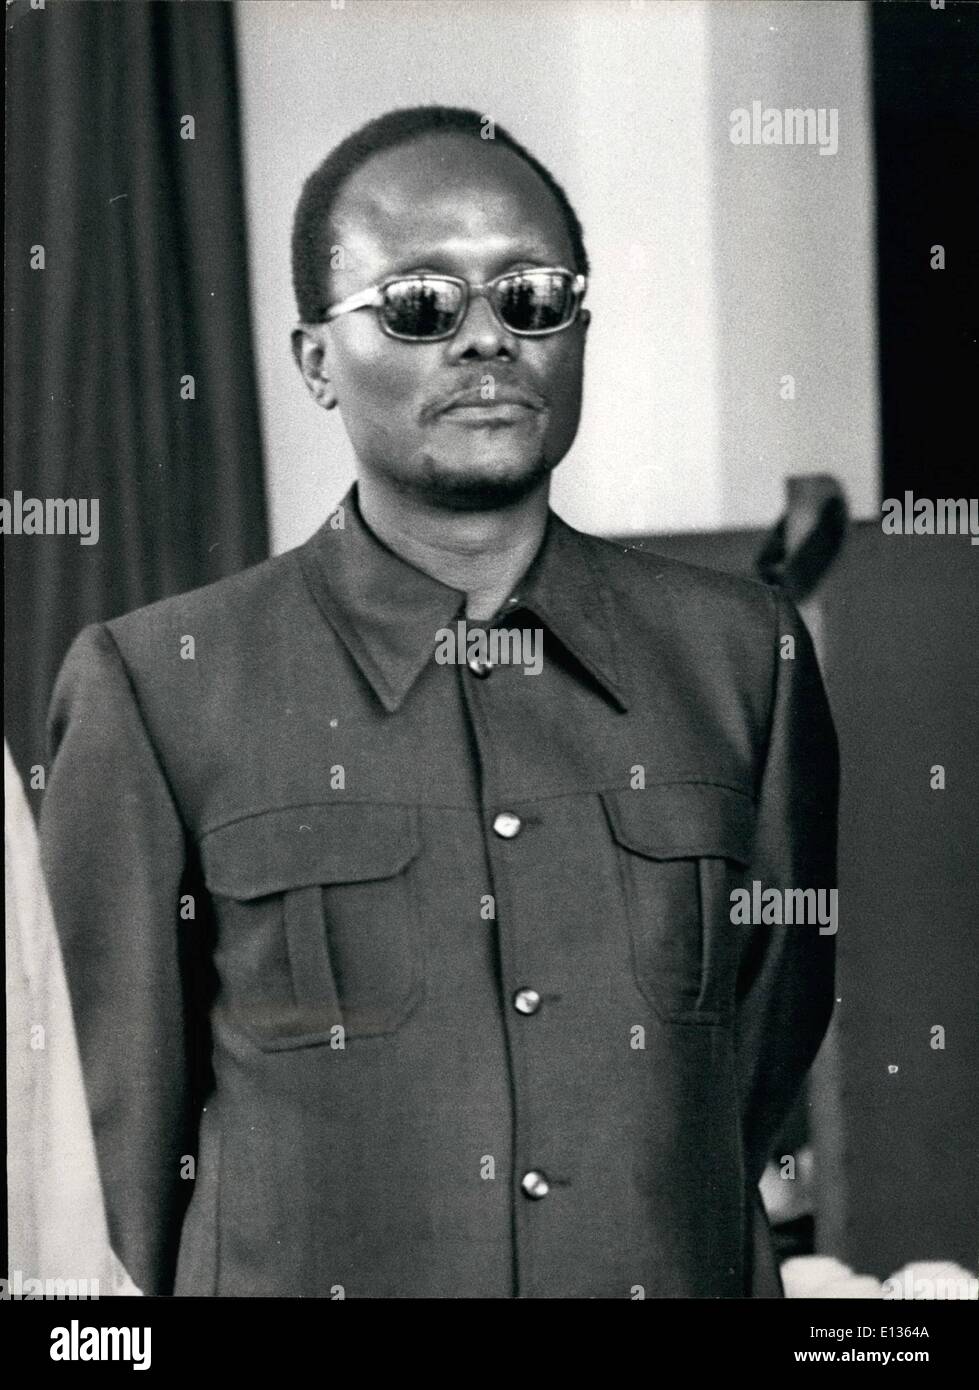 28. Februar 2012 - Dr. Holden Roberto, Führer der FNLA, angolanische Befreiungsbewegung. Geboren 1925. Erzogen in den Kongo. Finanzabteilung, Belgisch-Kongo, 1950-1954 arbeitete. UPA-Partei, gegründet 1954. Führer der FNLA, 1962. Credits: Camerapix Stockfoto